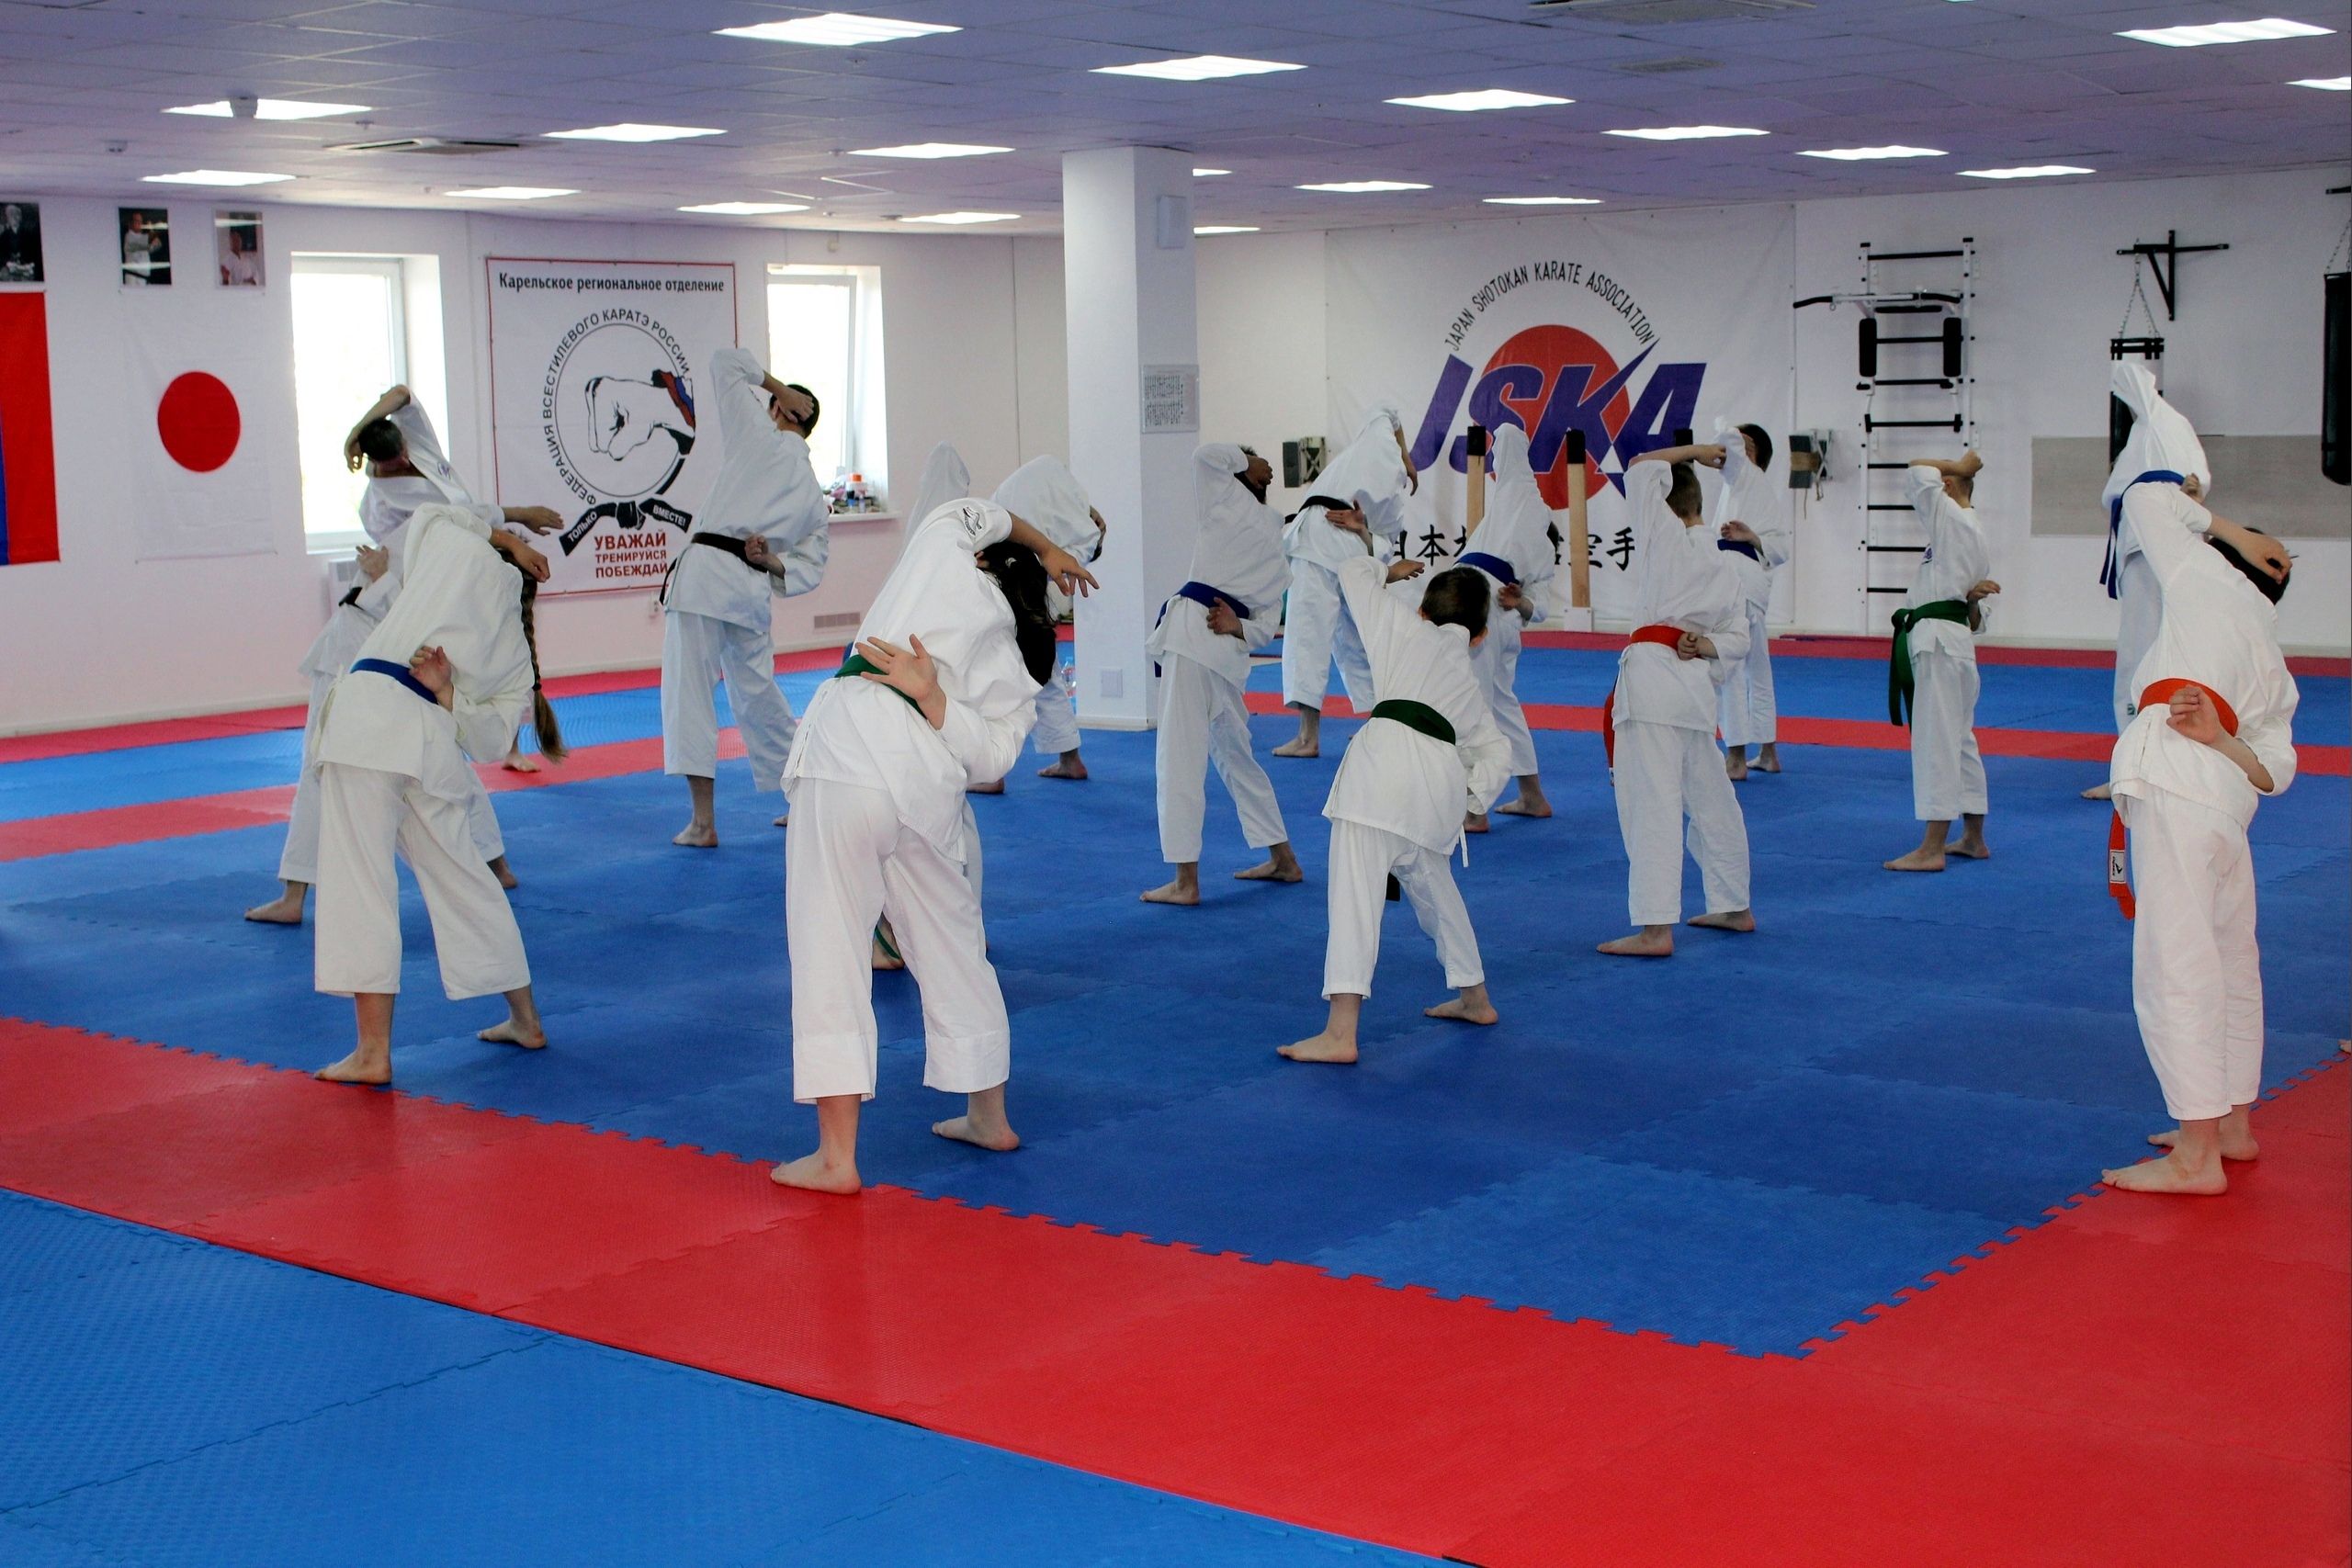 Voimistelusalissa voi harjoitella yhtä aikaa noin 200 urheilijaa. Niissä harjoittelee karatekoja ja nyrkkeilijöitä. Kuva: Petroskoin kaupunginvaltuuston VKontakte-sivu